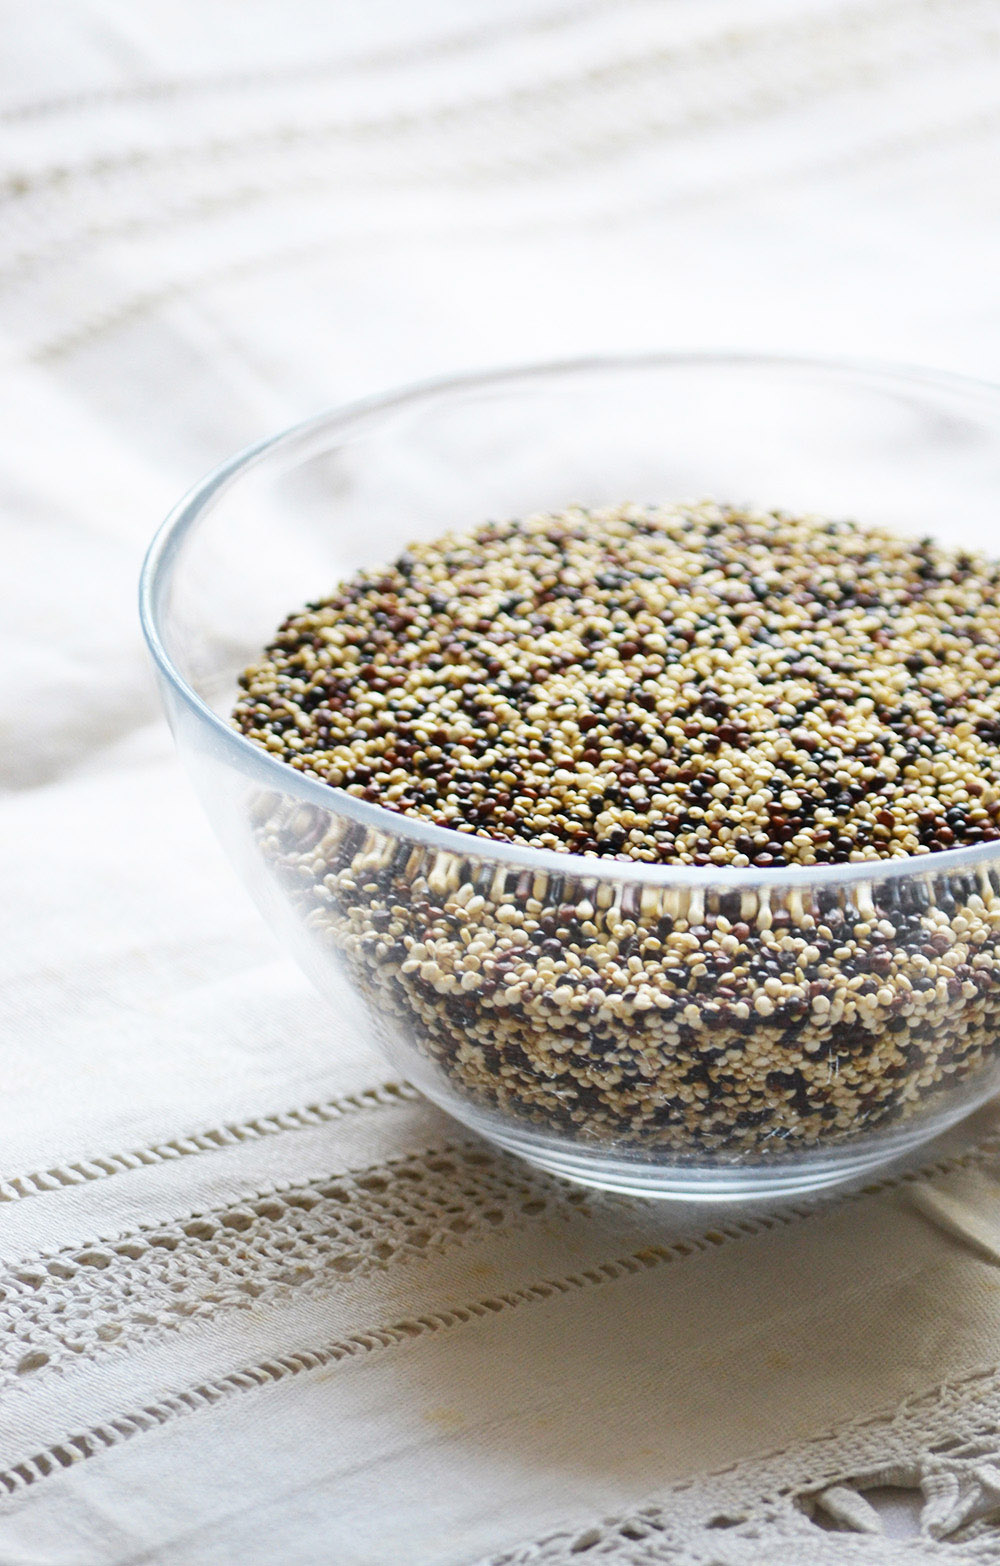 Quinoa - How to cook perfect quinoa?